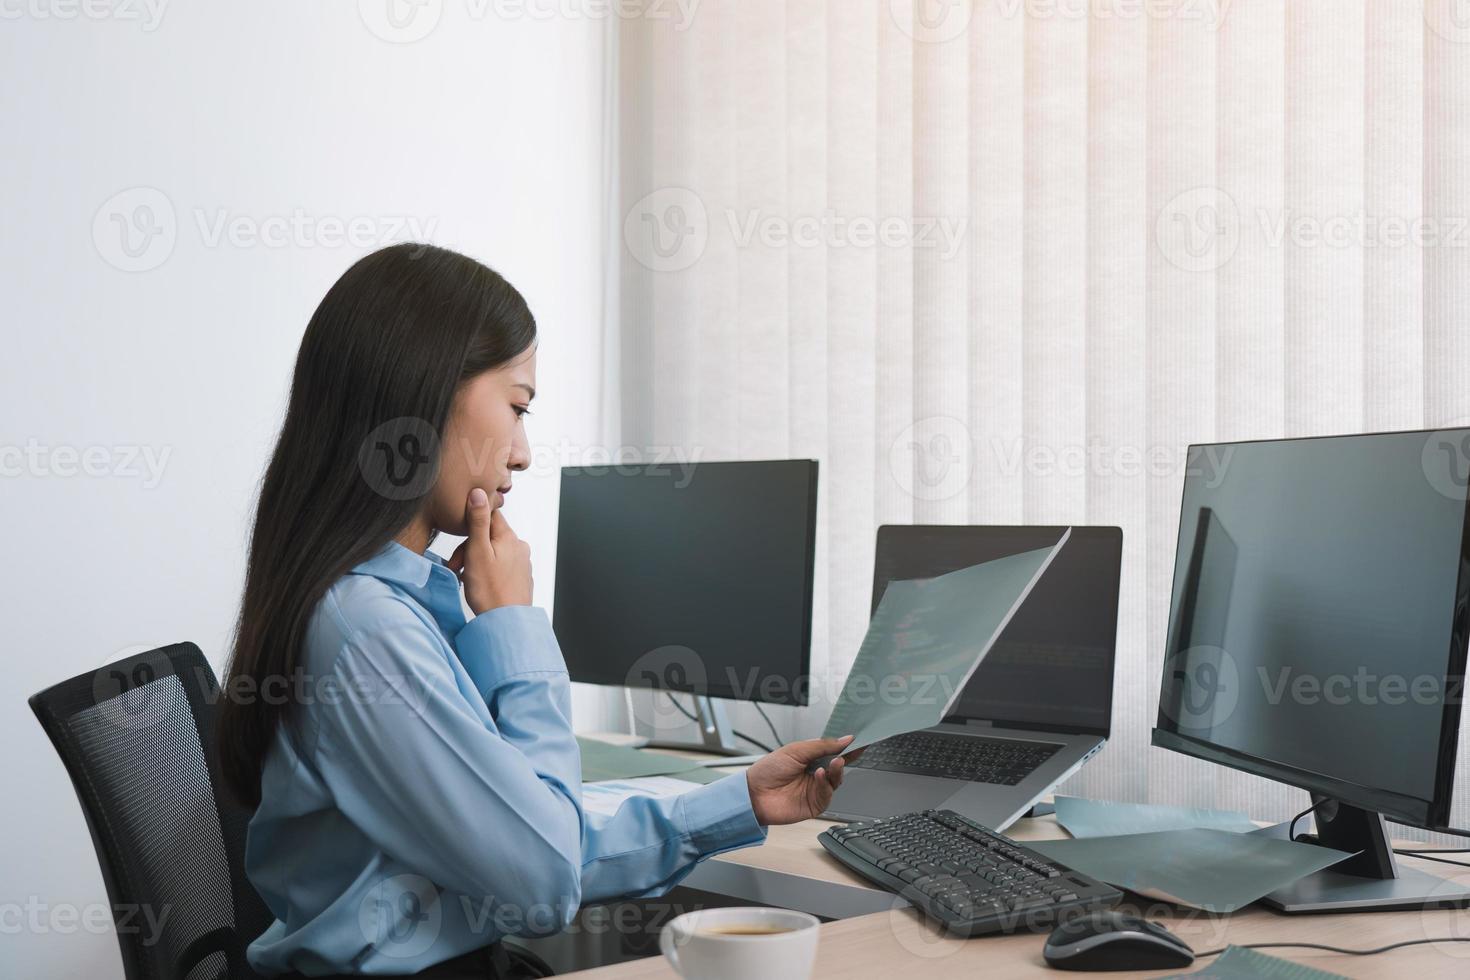 estresse a mulher asiática enquanto codifica o programador de dados no computador desktop enquanto trabalha em códigos de computador no escritório. foto